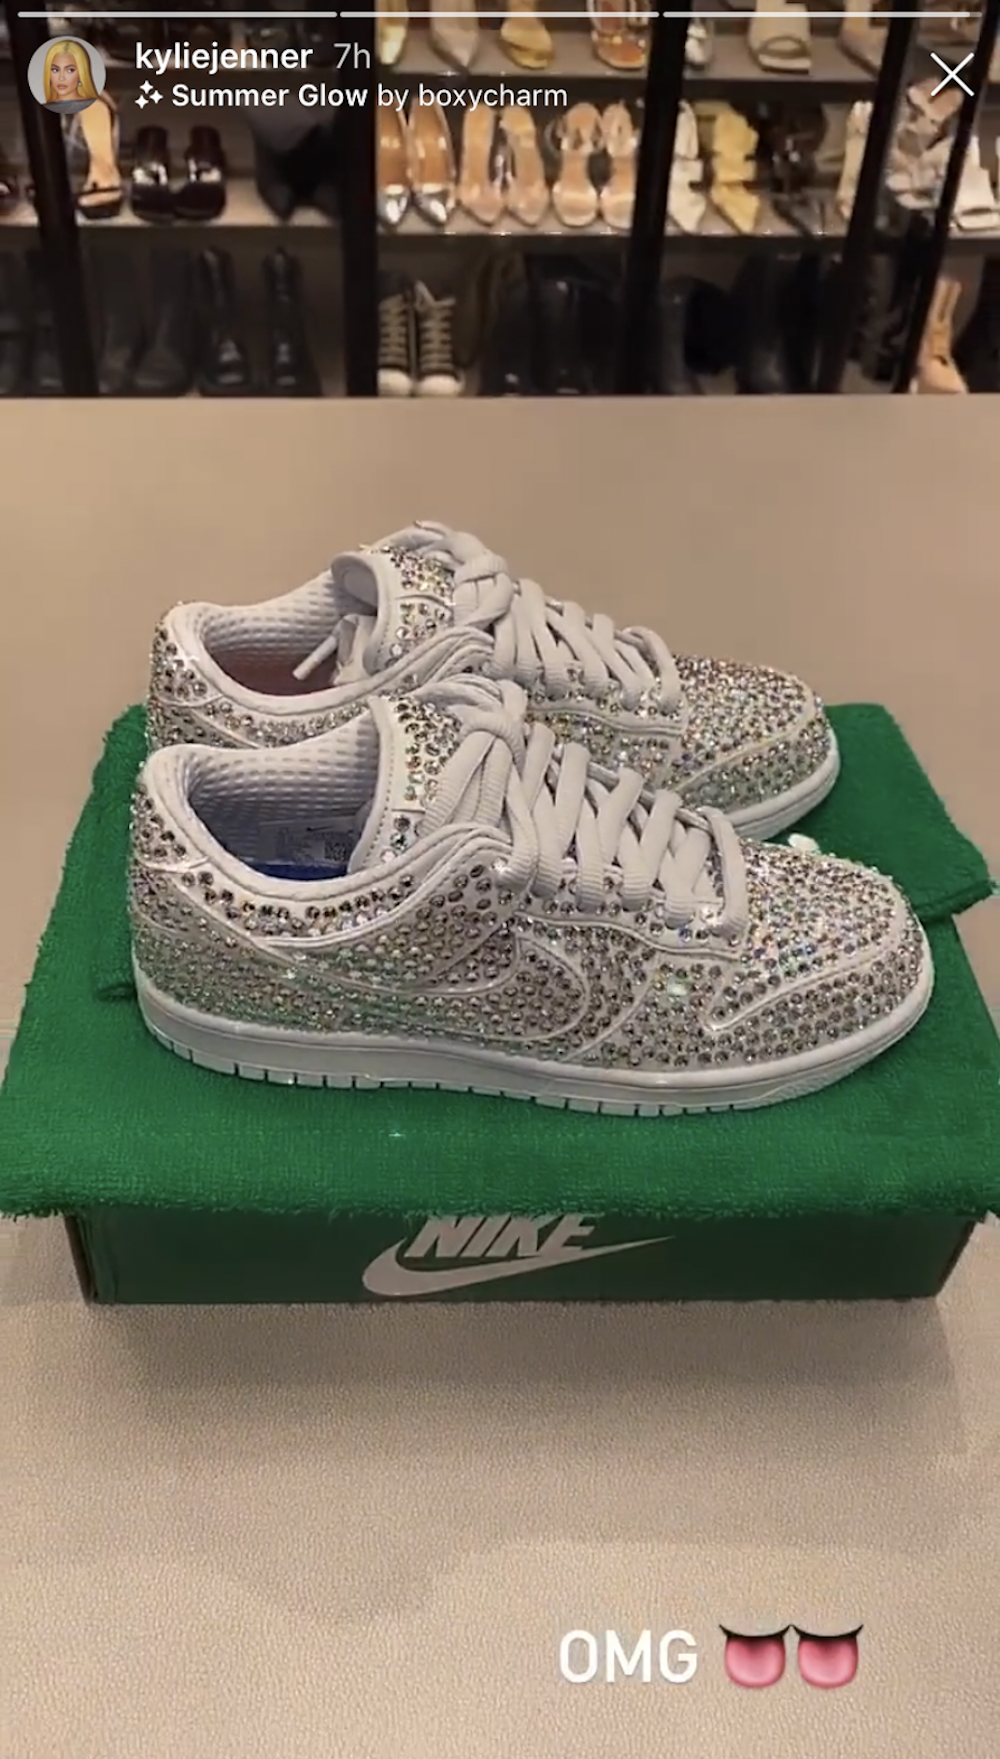 Forberedelse jernbane Barnlig Kylie Jenner Just Got Diamond-Covered Nike Sneakers